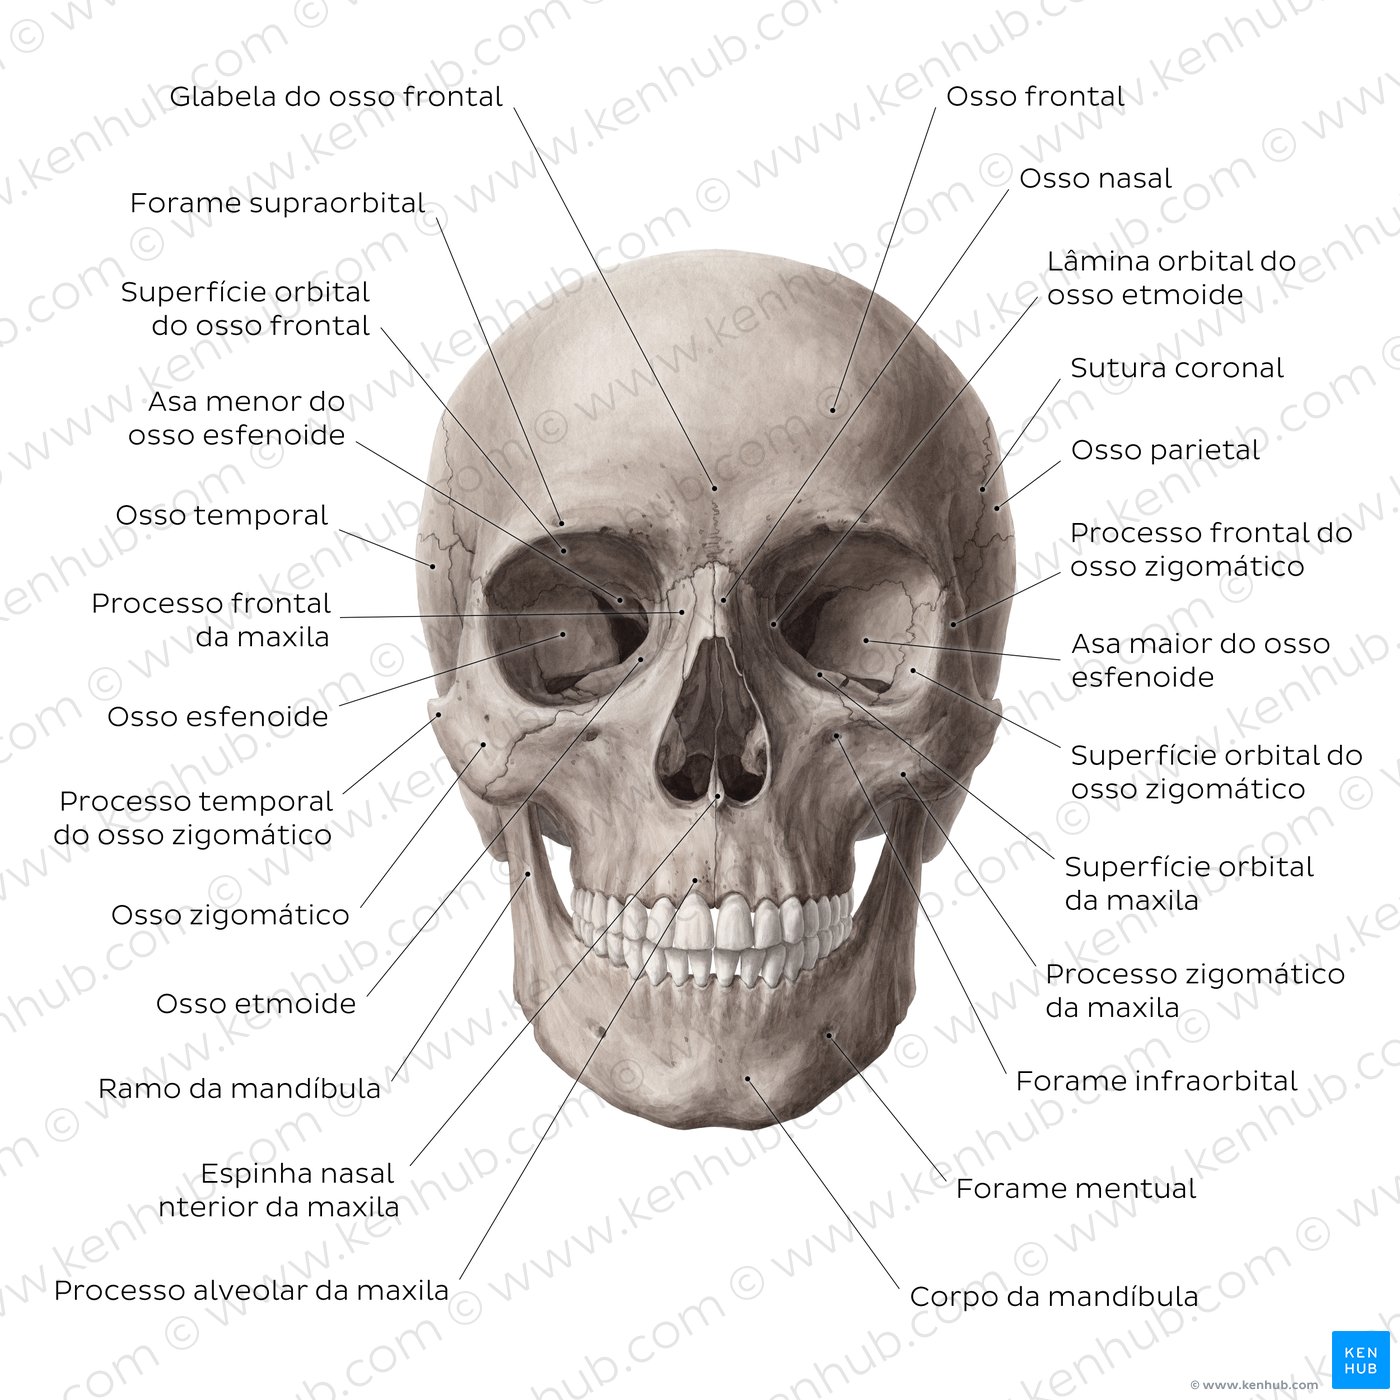 Crânio humano: Anatomia, estrutura e ossos | Kenhub